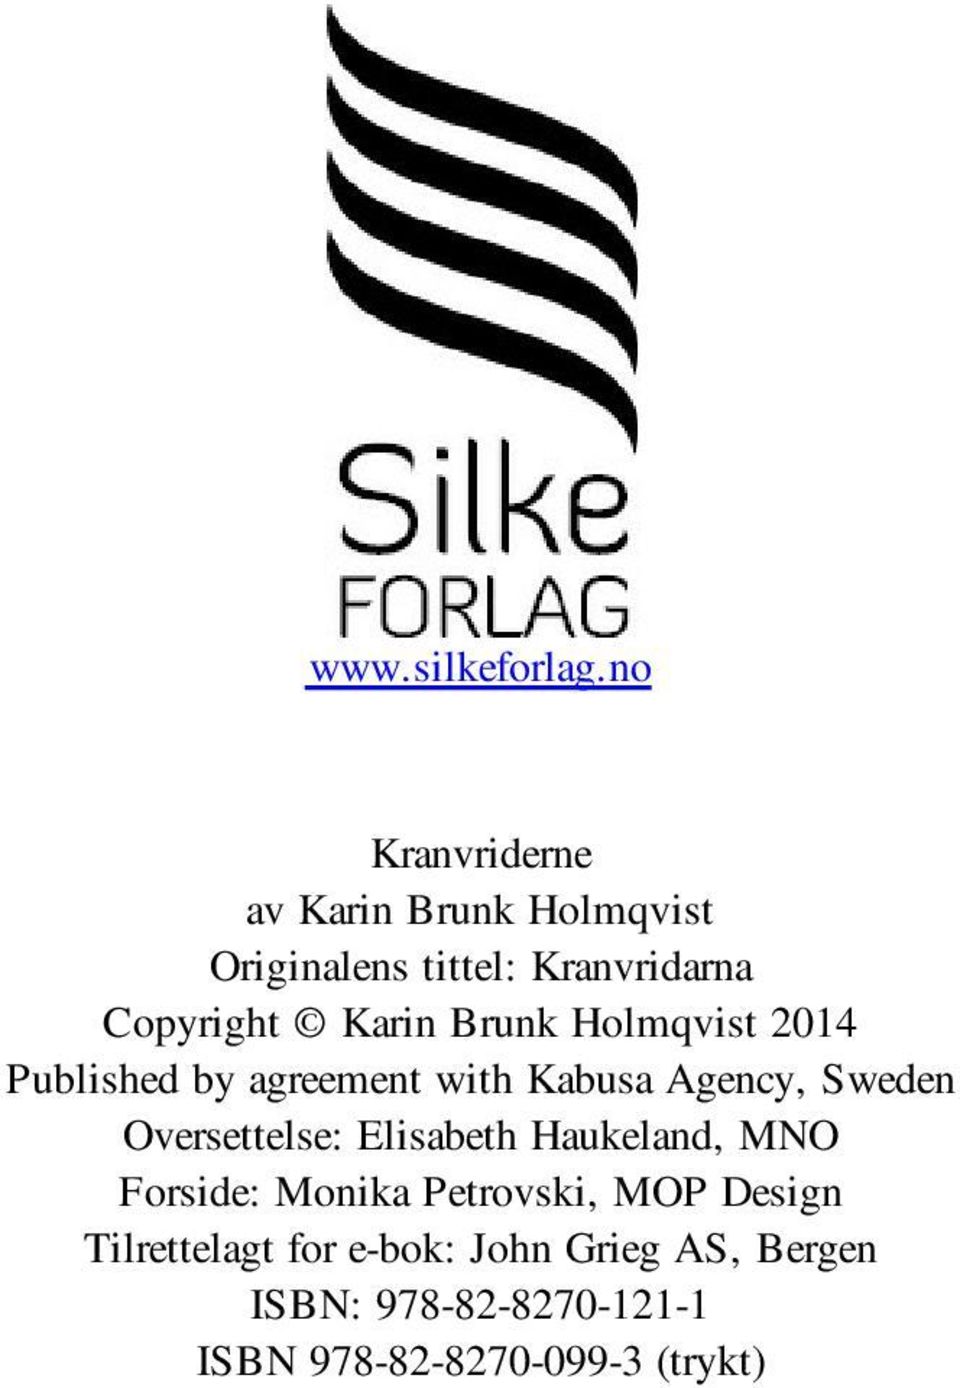 Karin Brunk Holmqvist 2014 Published by agreement with Kabusa Agency, Sweden